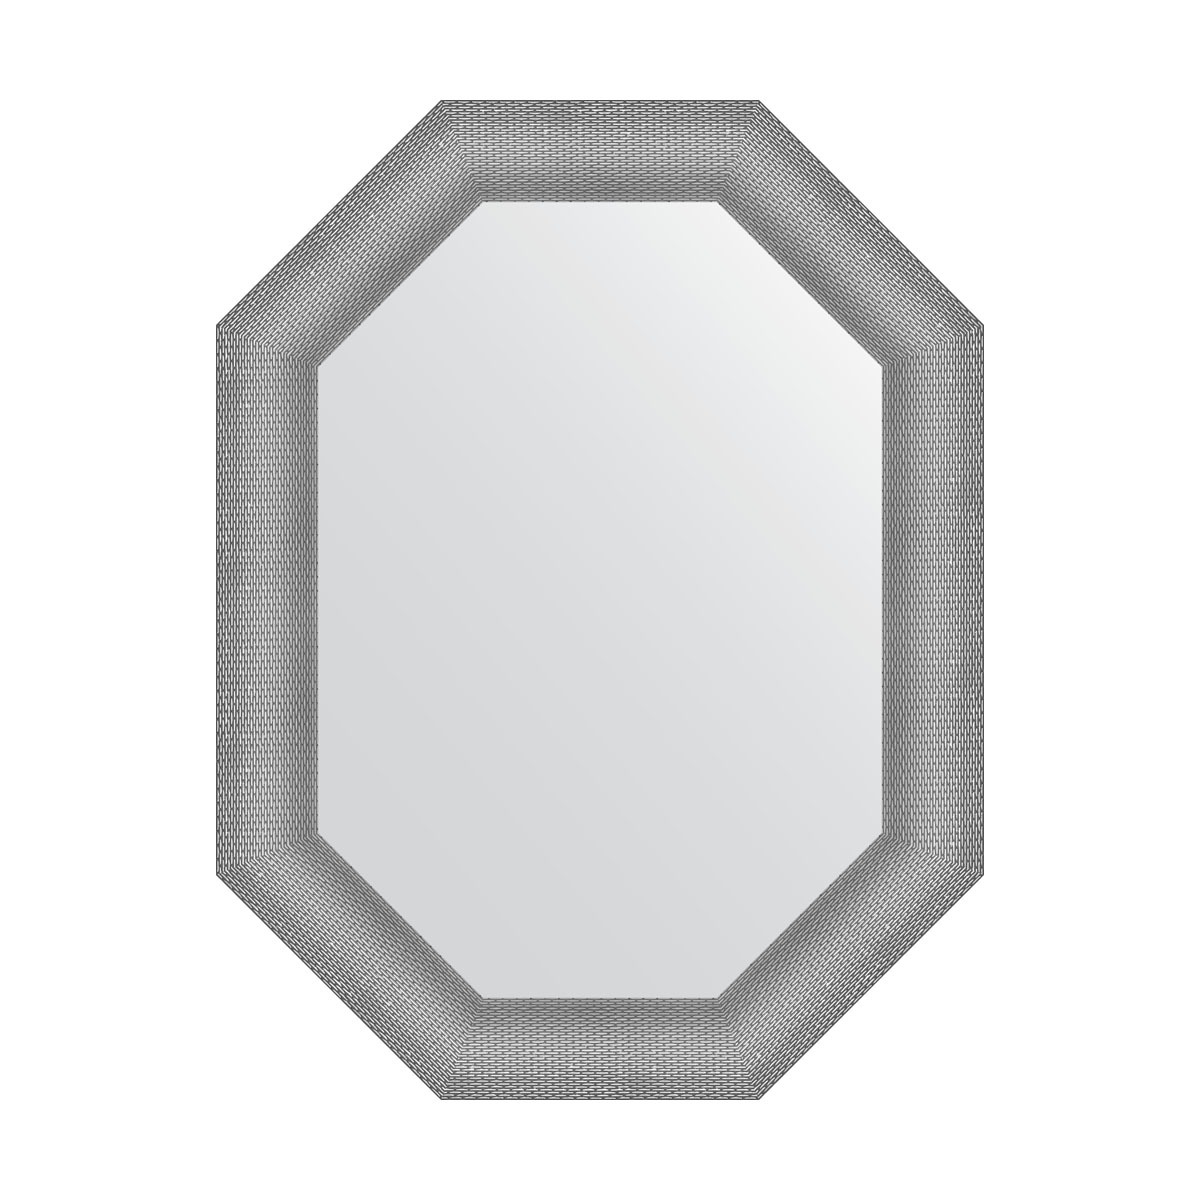 Зеркало в багетной раме Evoform серебряная кольчуга 88 мм 66x86 см зеркало в багетной раме evoform хамелеон 88 мм 66x86 см